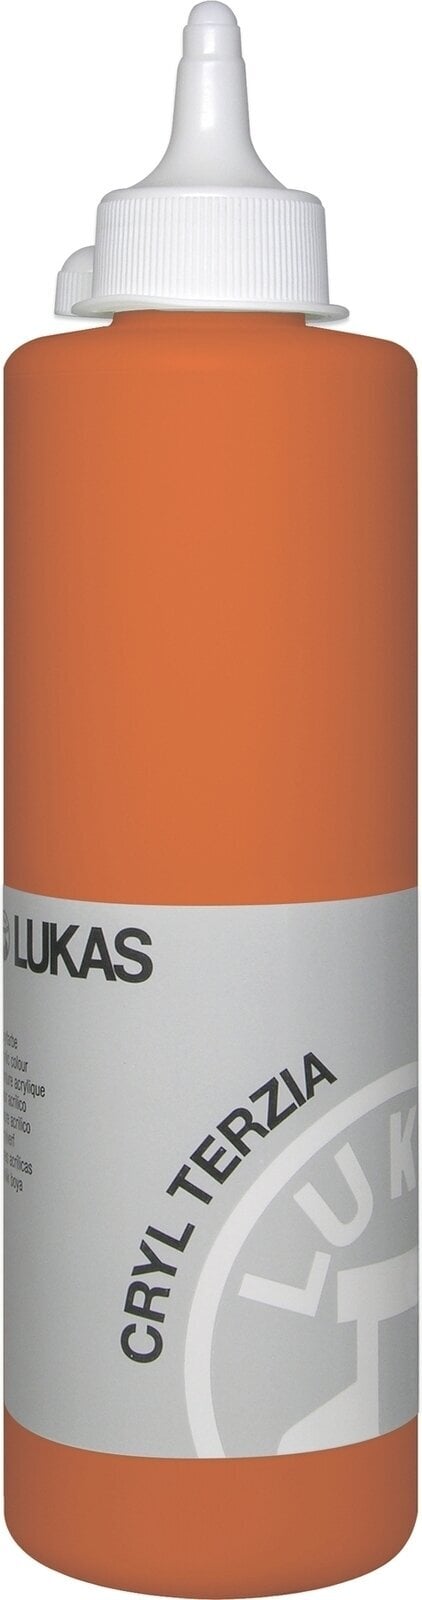 Acrylverf Lukas Cryl Terzia Acrylverf 500 ml Cadmium Orange Hue